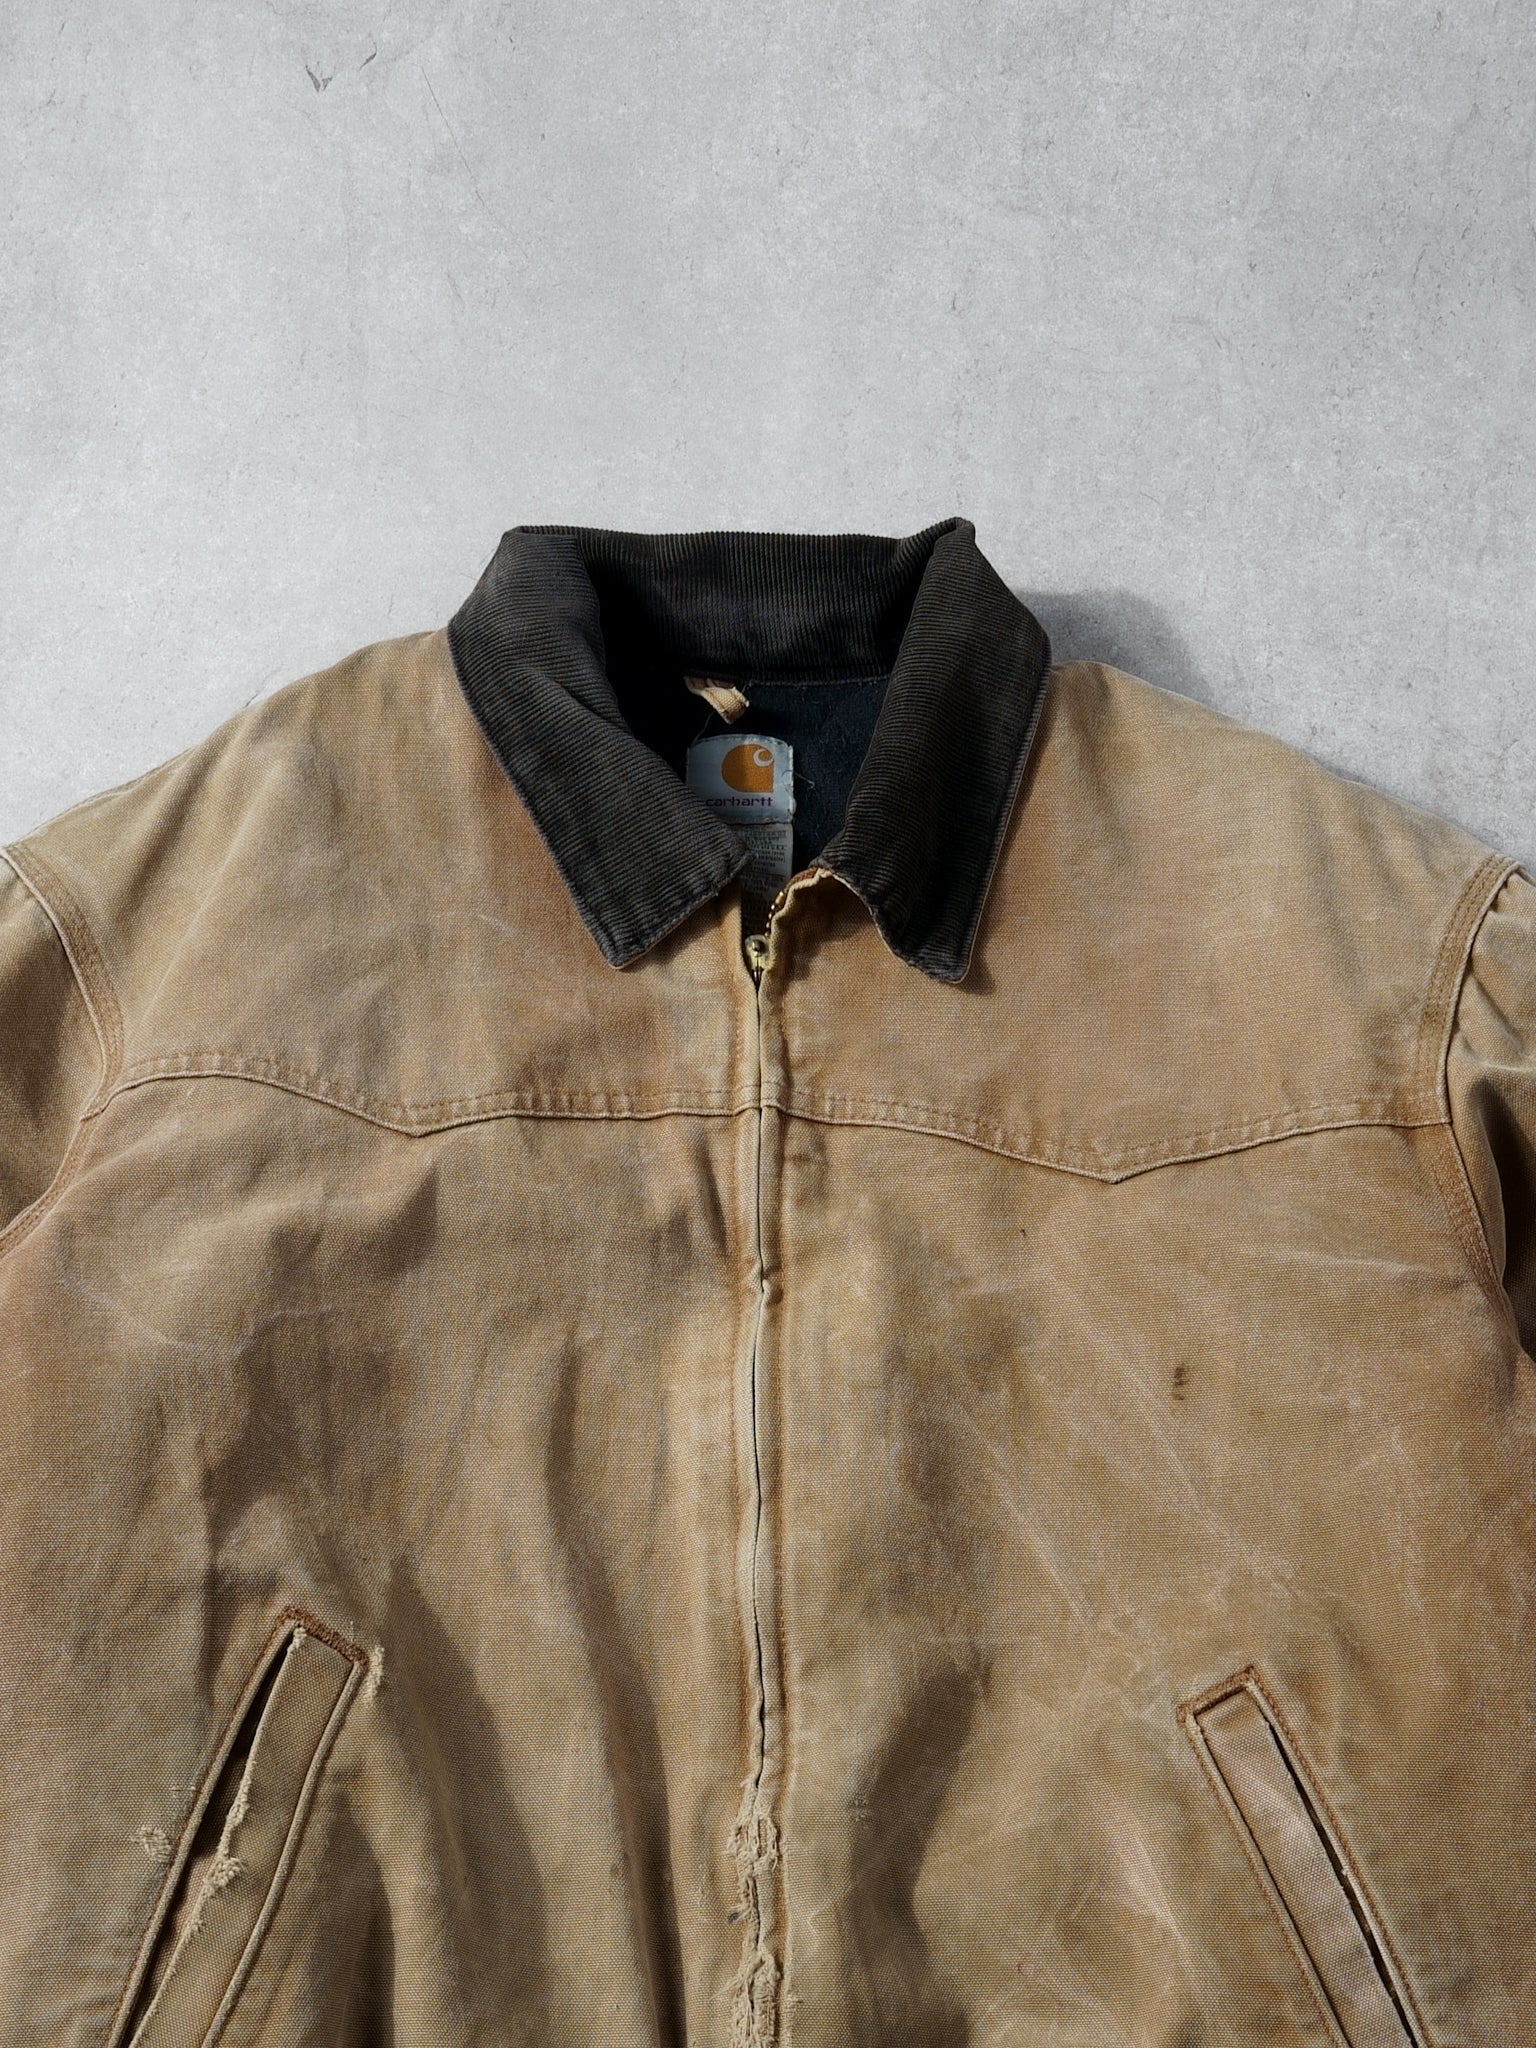 Vintage 90s Khaki Carhartt Sante Fe Workwear Jacket (XL)